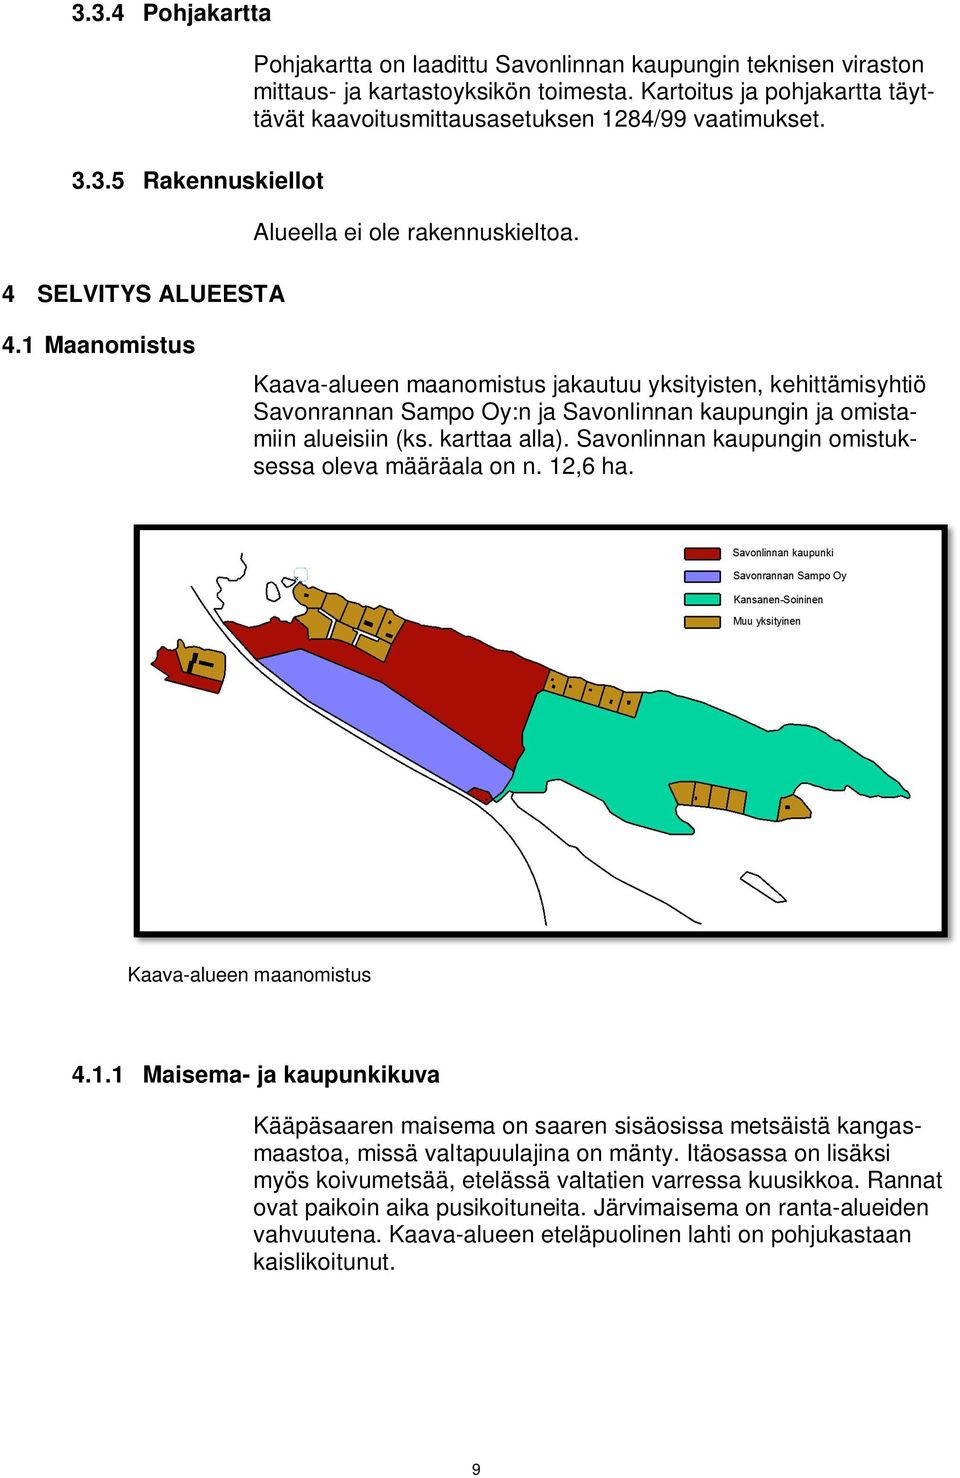 1 Maanomistus Kaava-alueen maanomistus jakautuu yksityisten, kehittämisyhtiö Savonrannan Sampo Oy:n ja Savonlinnan kaupungin ja omistamiin alueisiin (ks. karttaa alla).